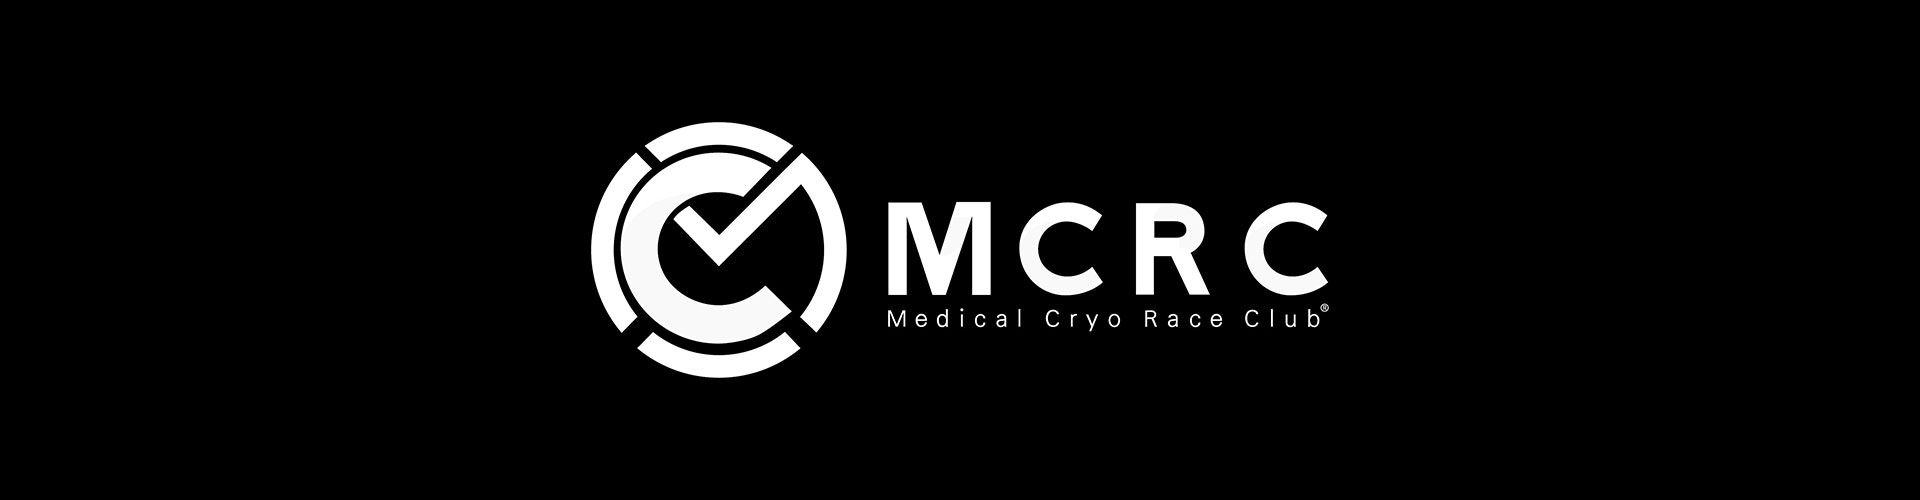 MCRC Standort Cryodukt Zürich MCRC AG